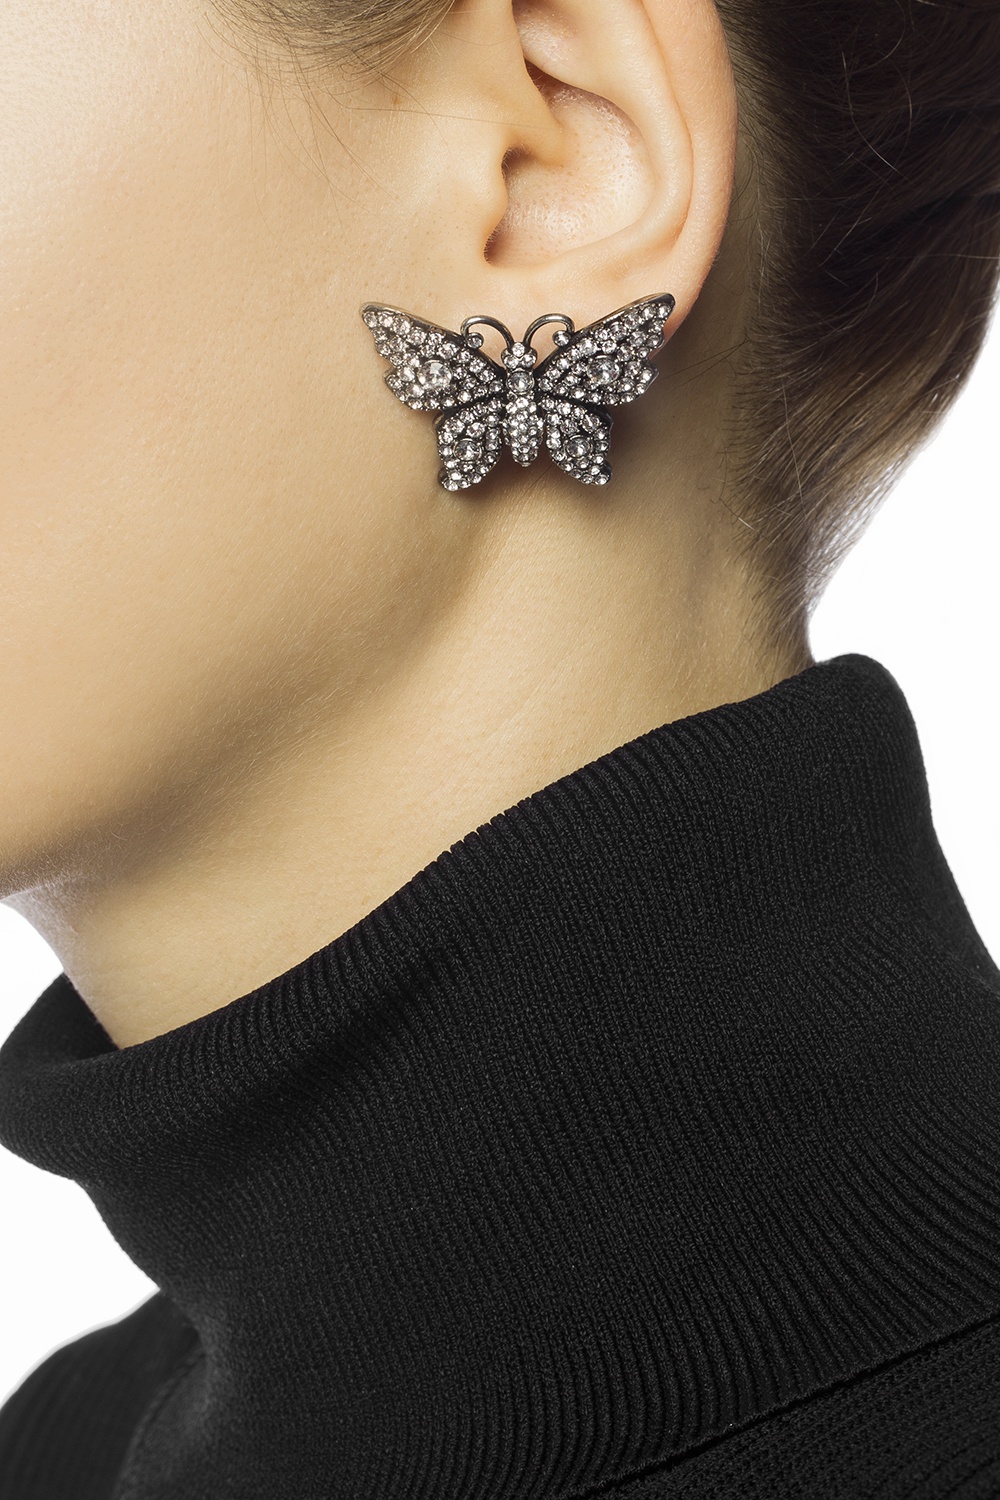 gucci butterfly earrings